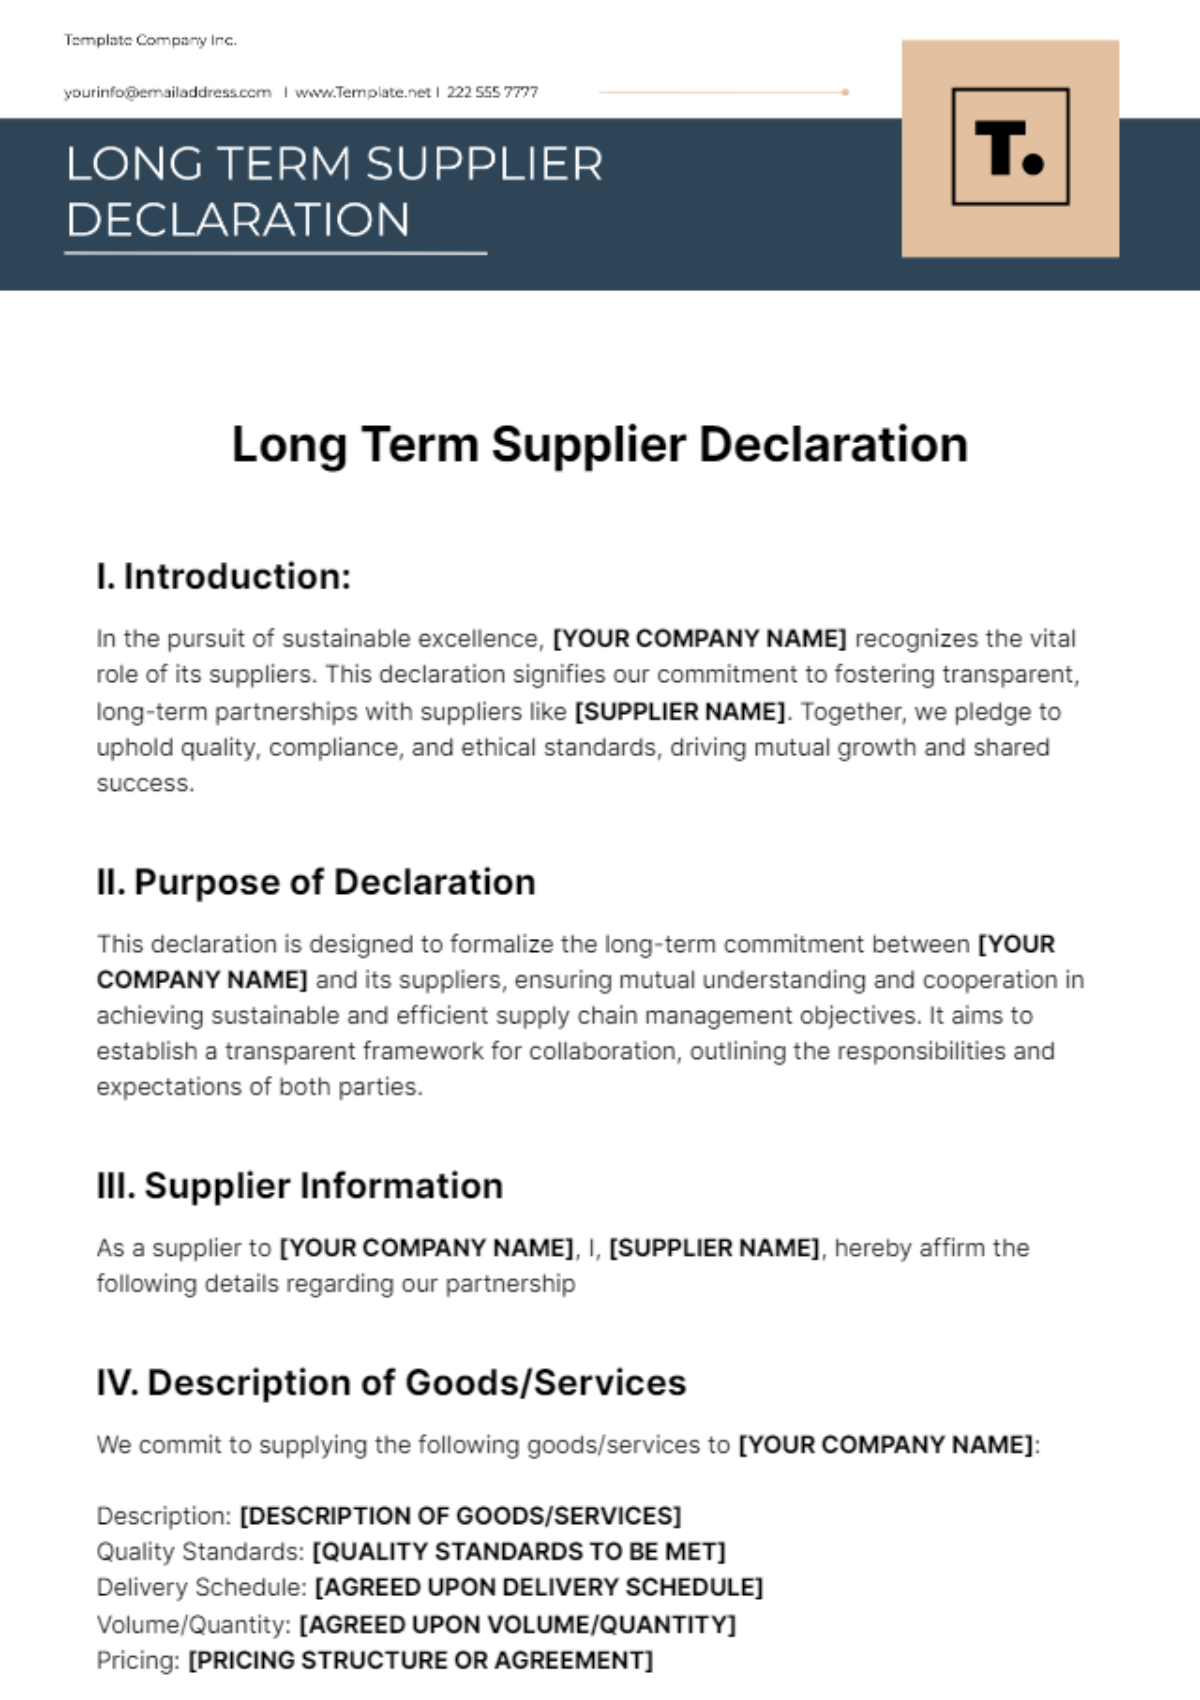 Long Term Supplier Declaration Template